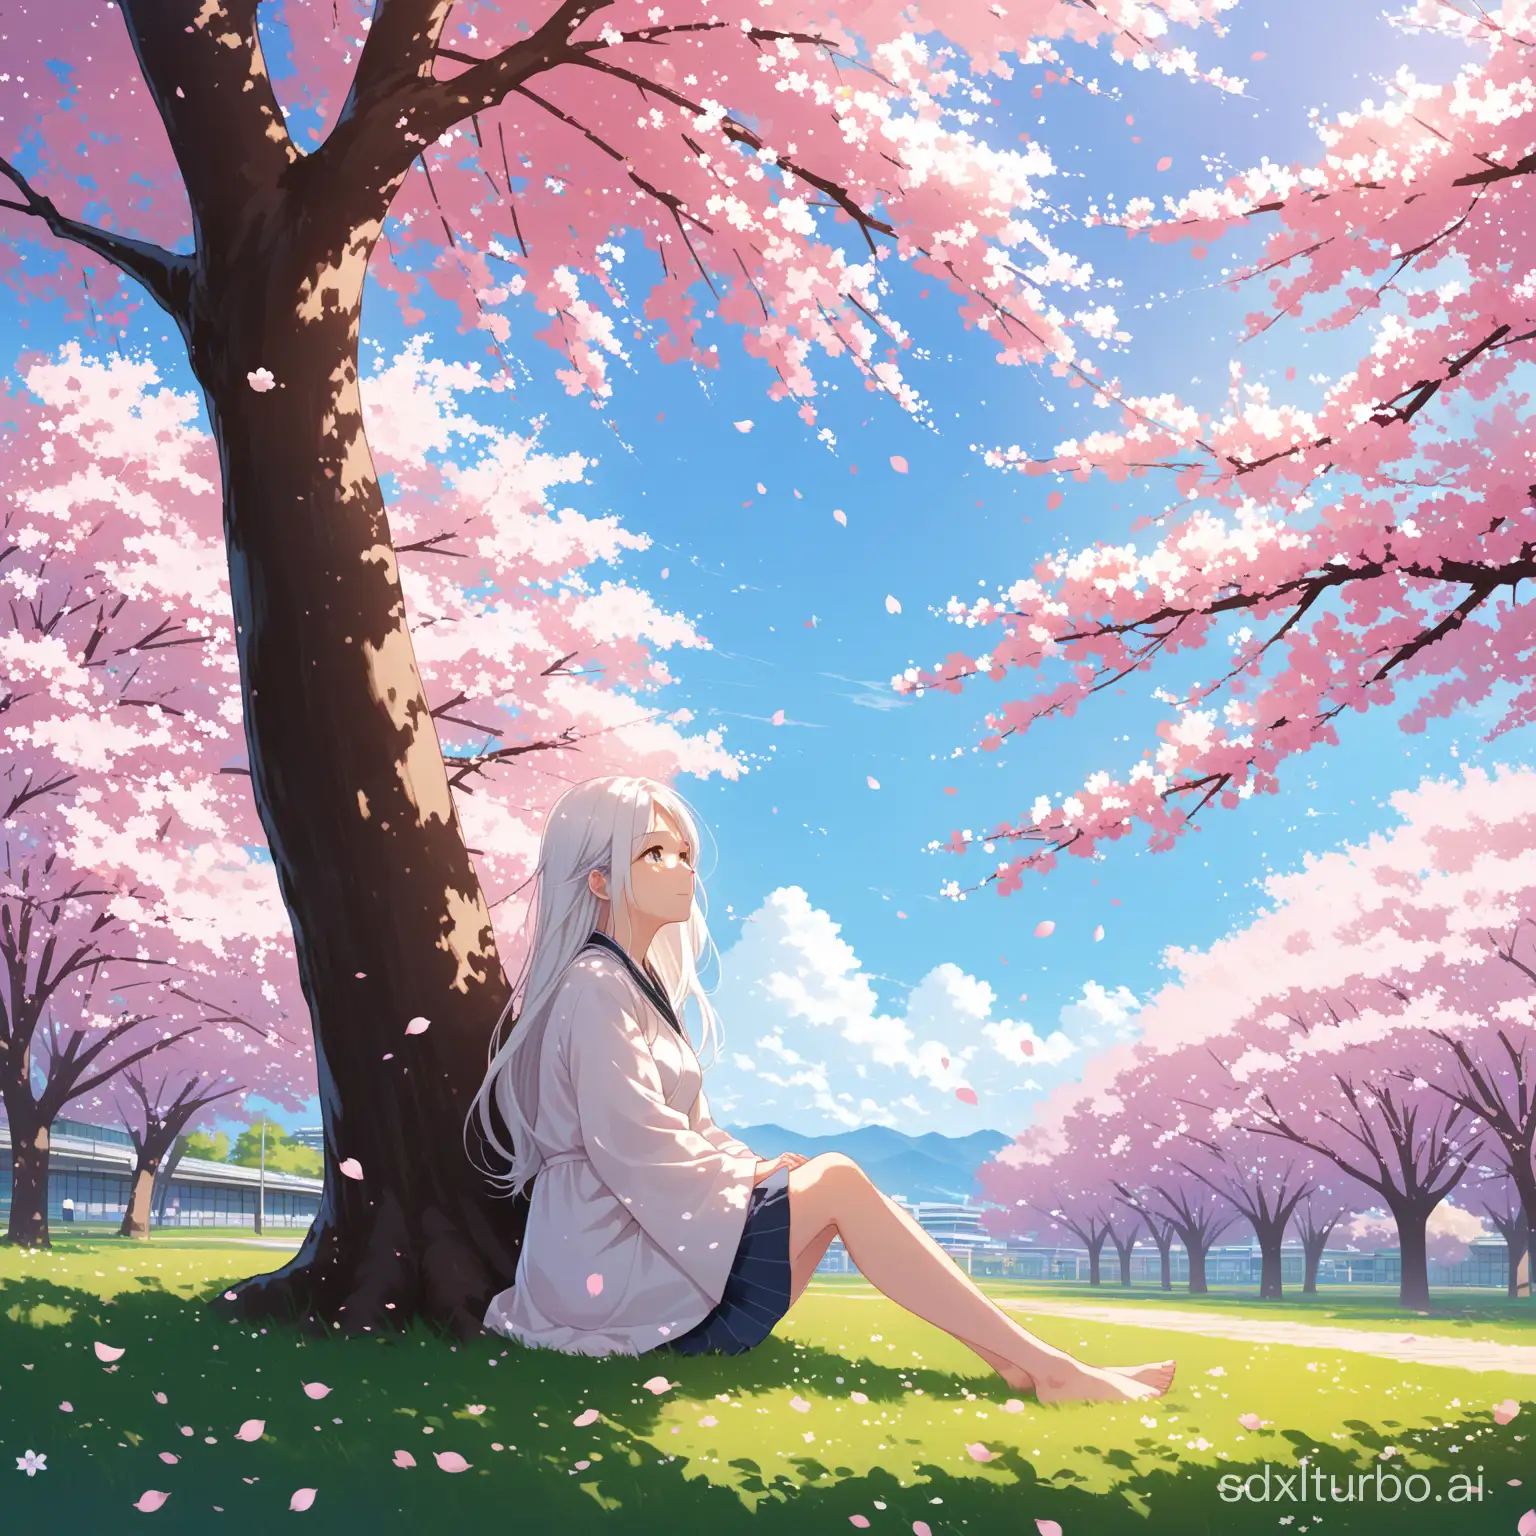 Tranquil-Girl-Under-Cherry-Blossom-Tree-Serene-Scene-of-LongHaired-Girl-Amidst-Petals